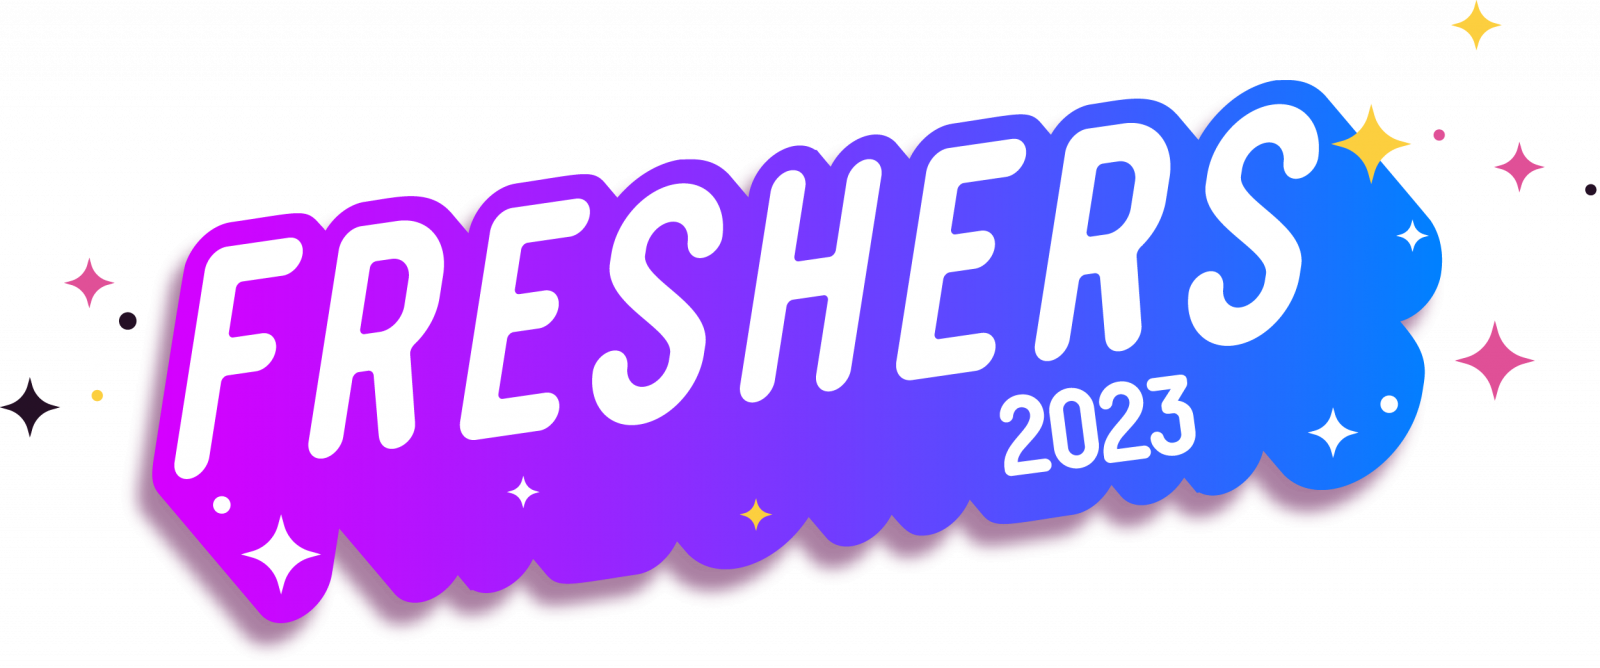 Freshers 2023 logo